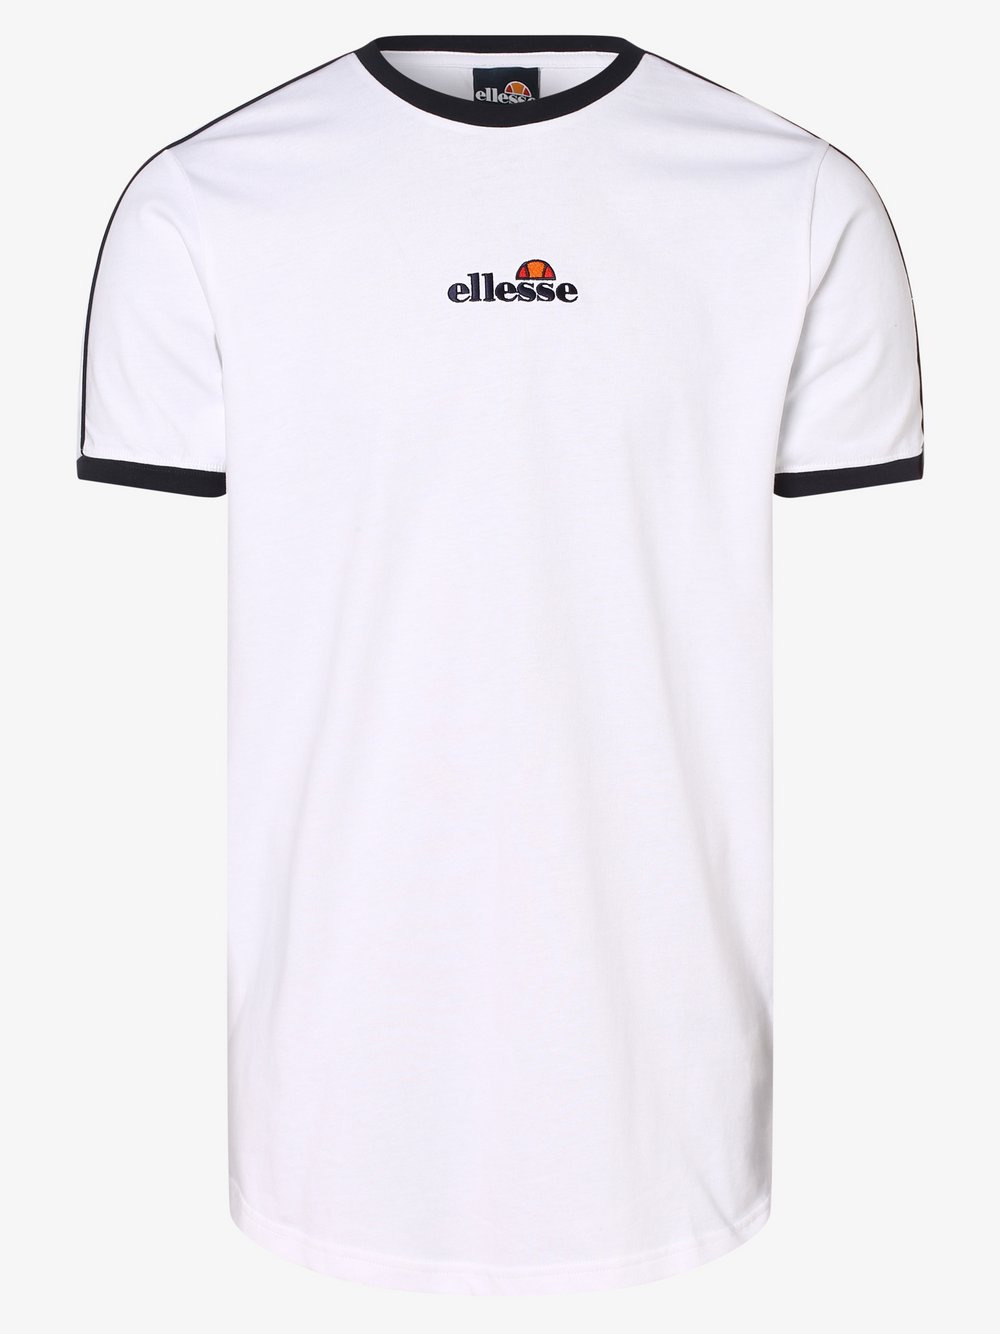 ellesse - T-shirt męski – Riesco, biały